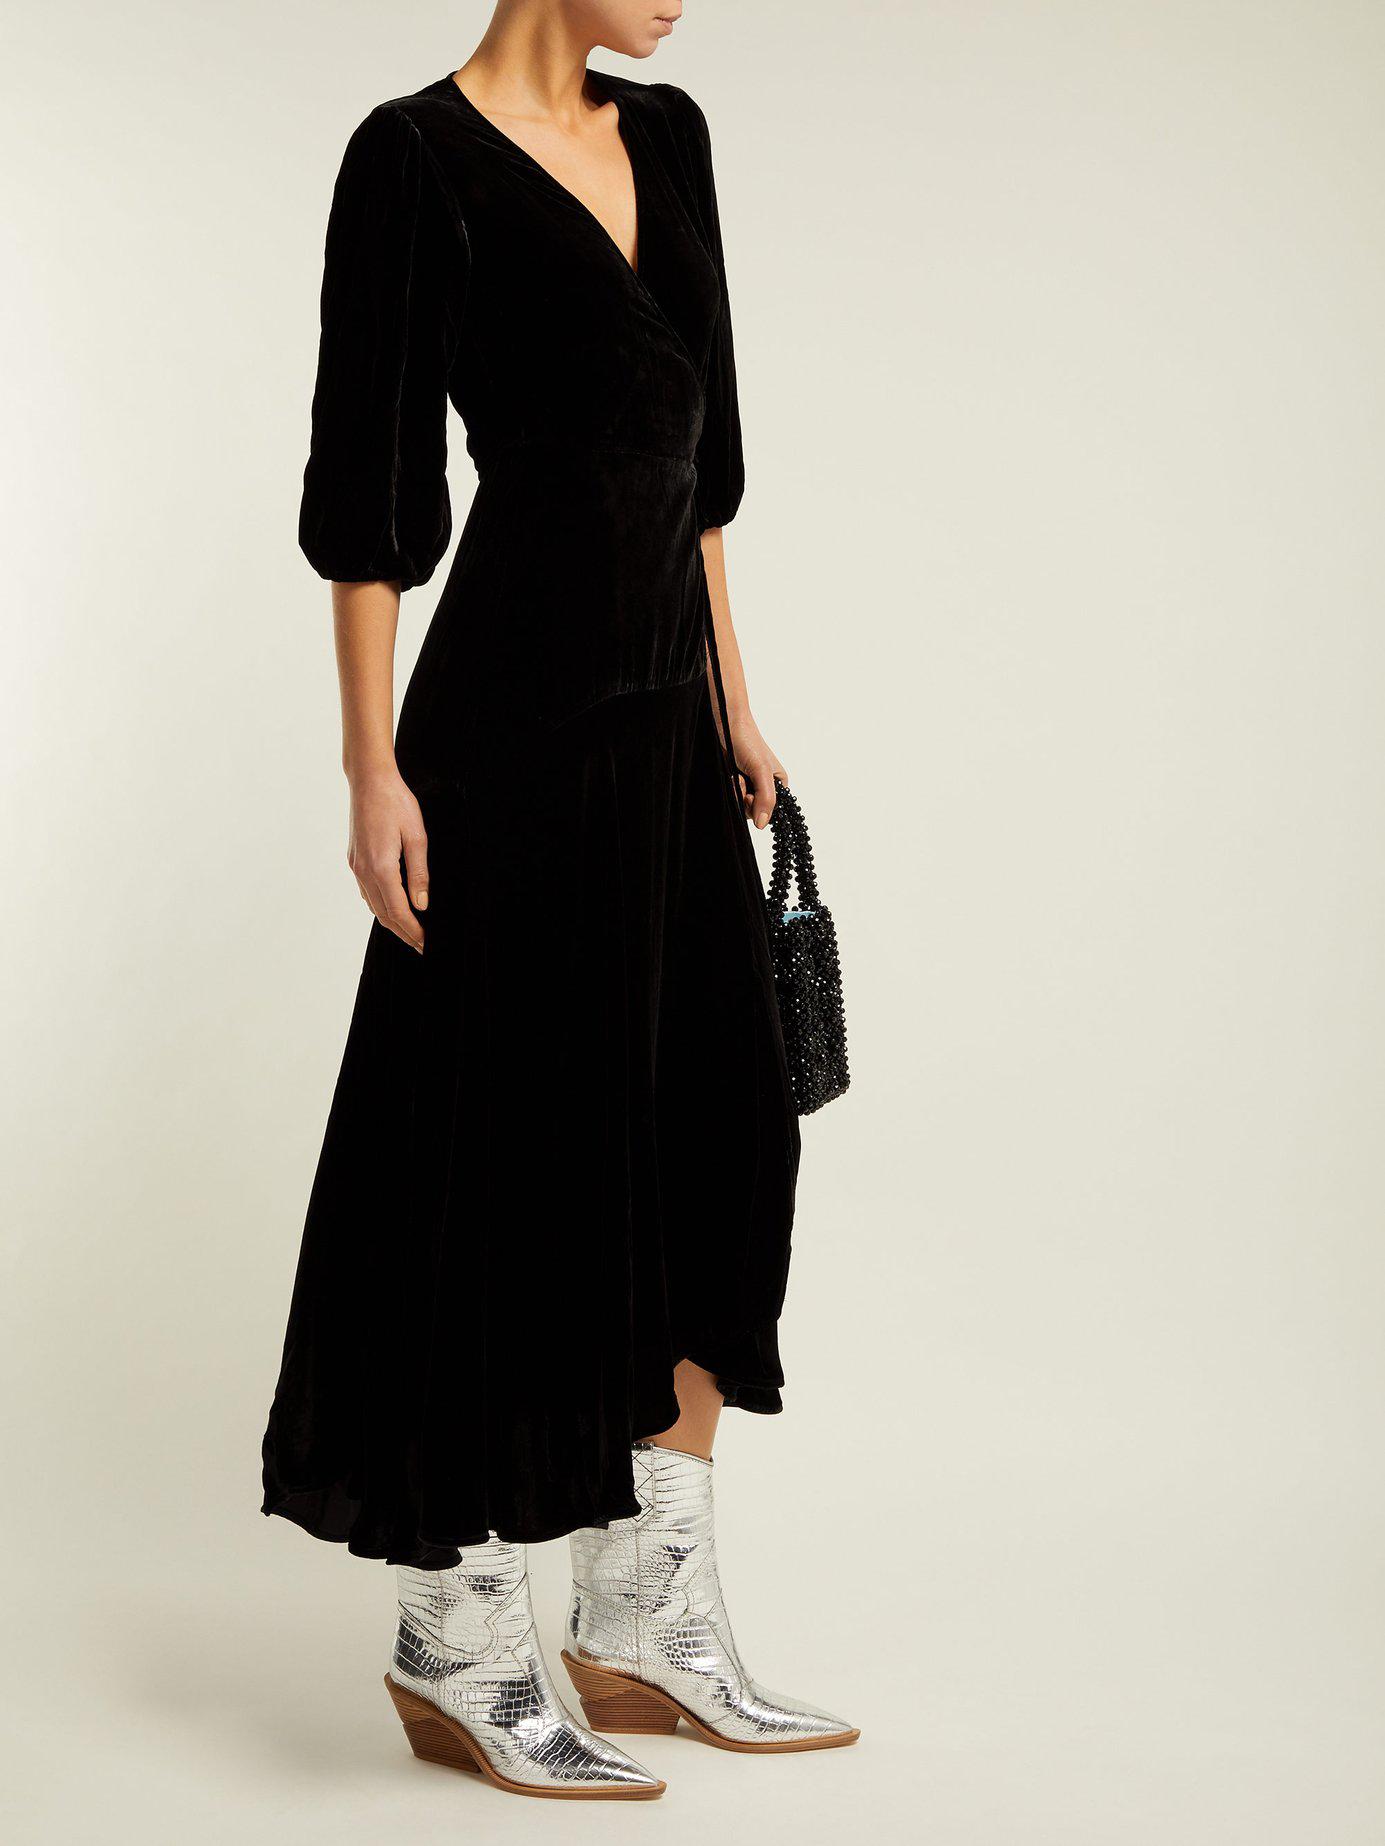 Ganni Aldine Velvet Wrap Dress in Black - Lyst